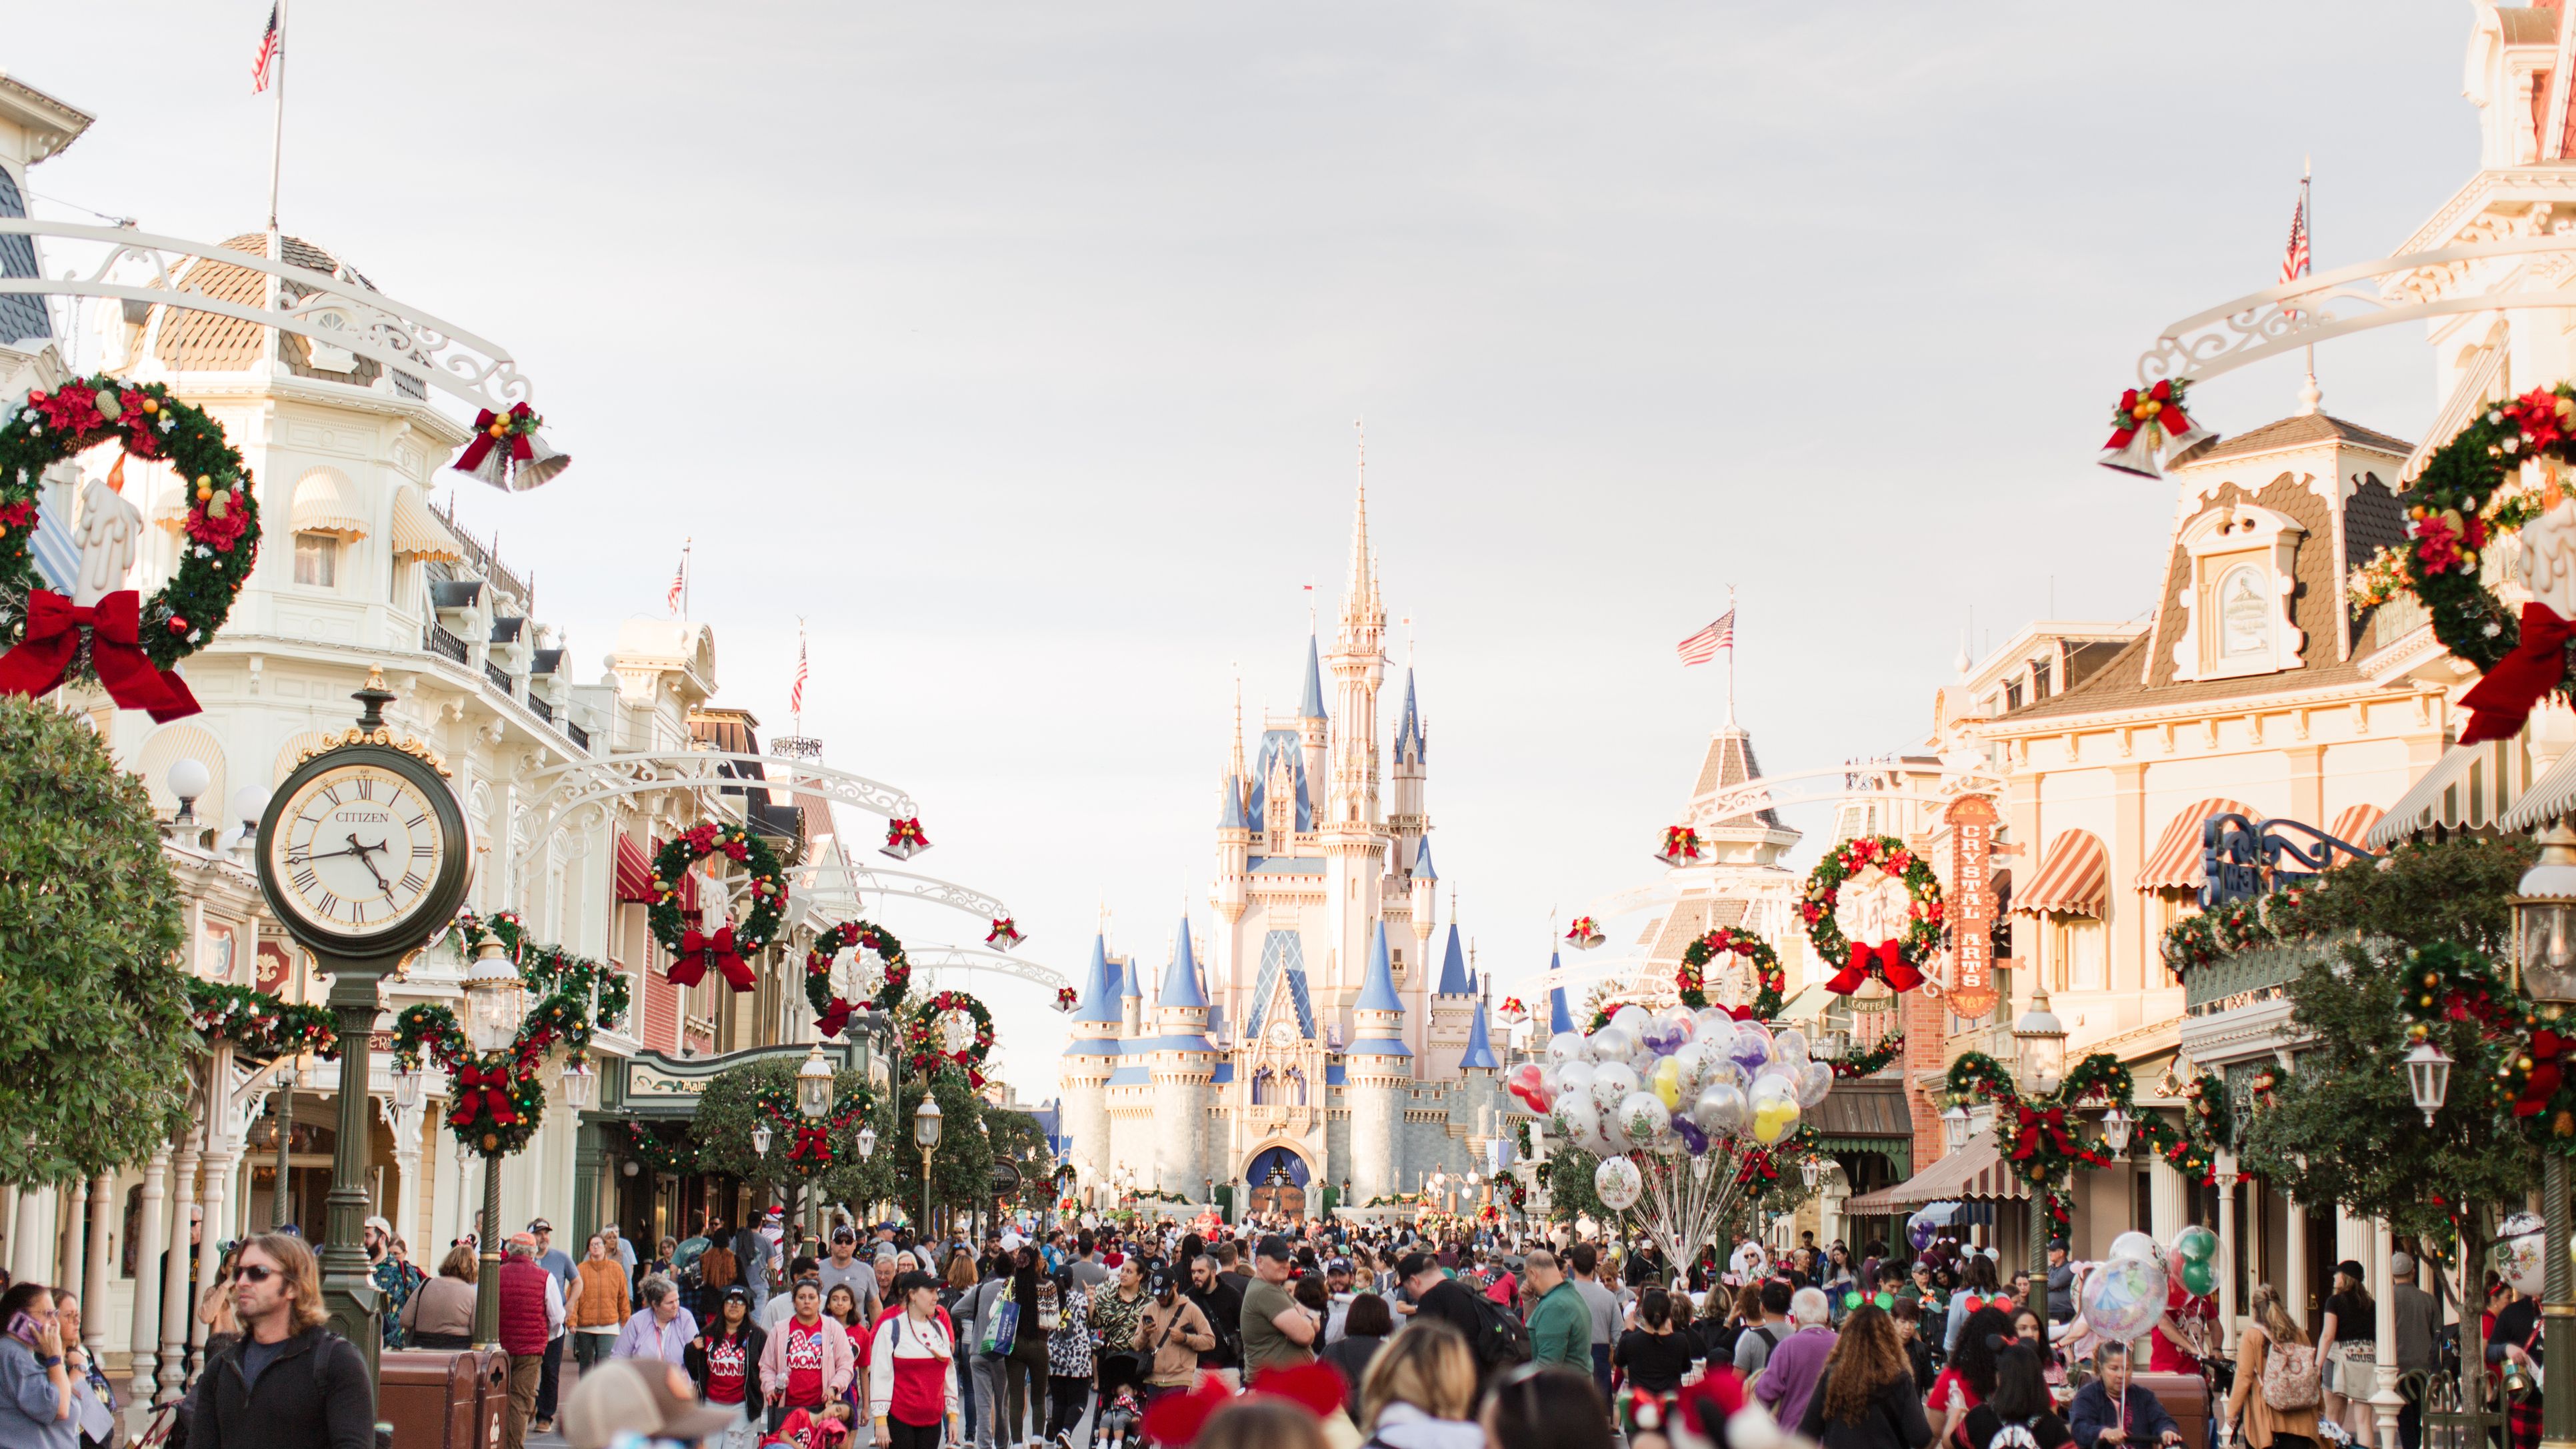 Walt Disney World Orlando Travel Guide - Expert Picks for your